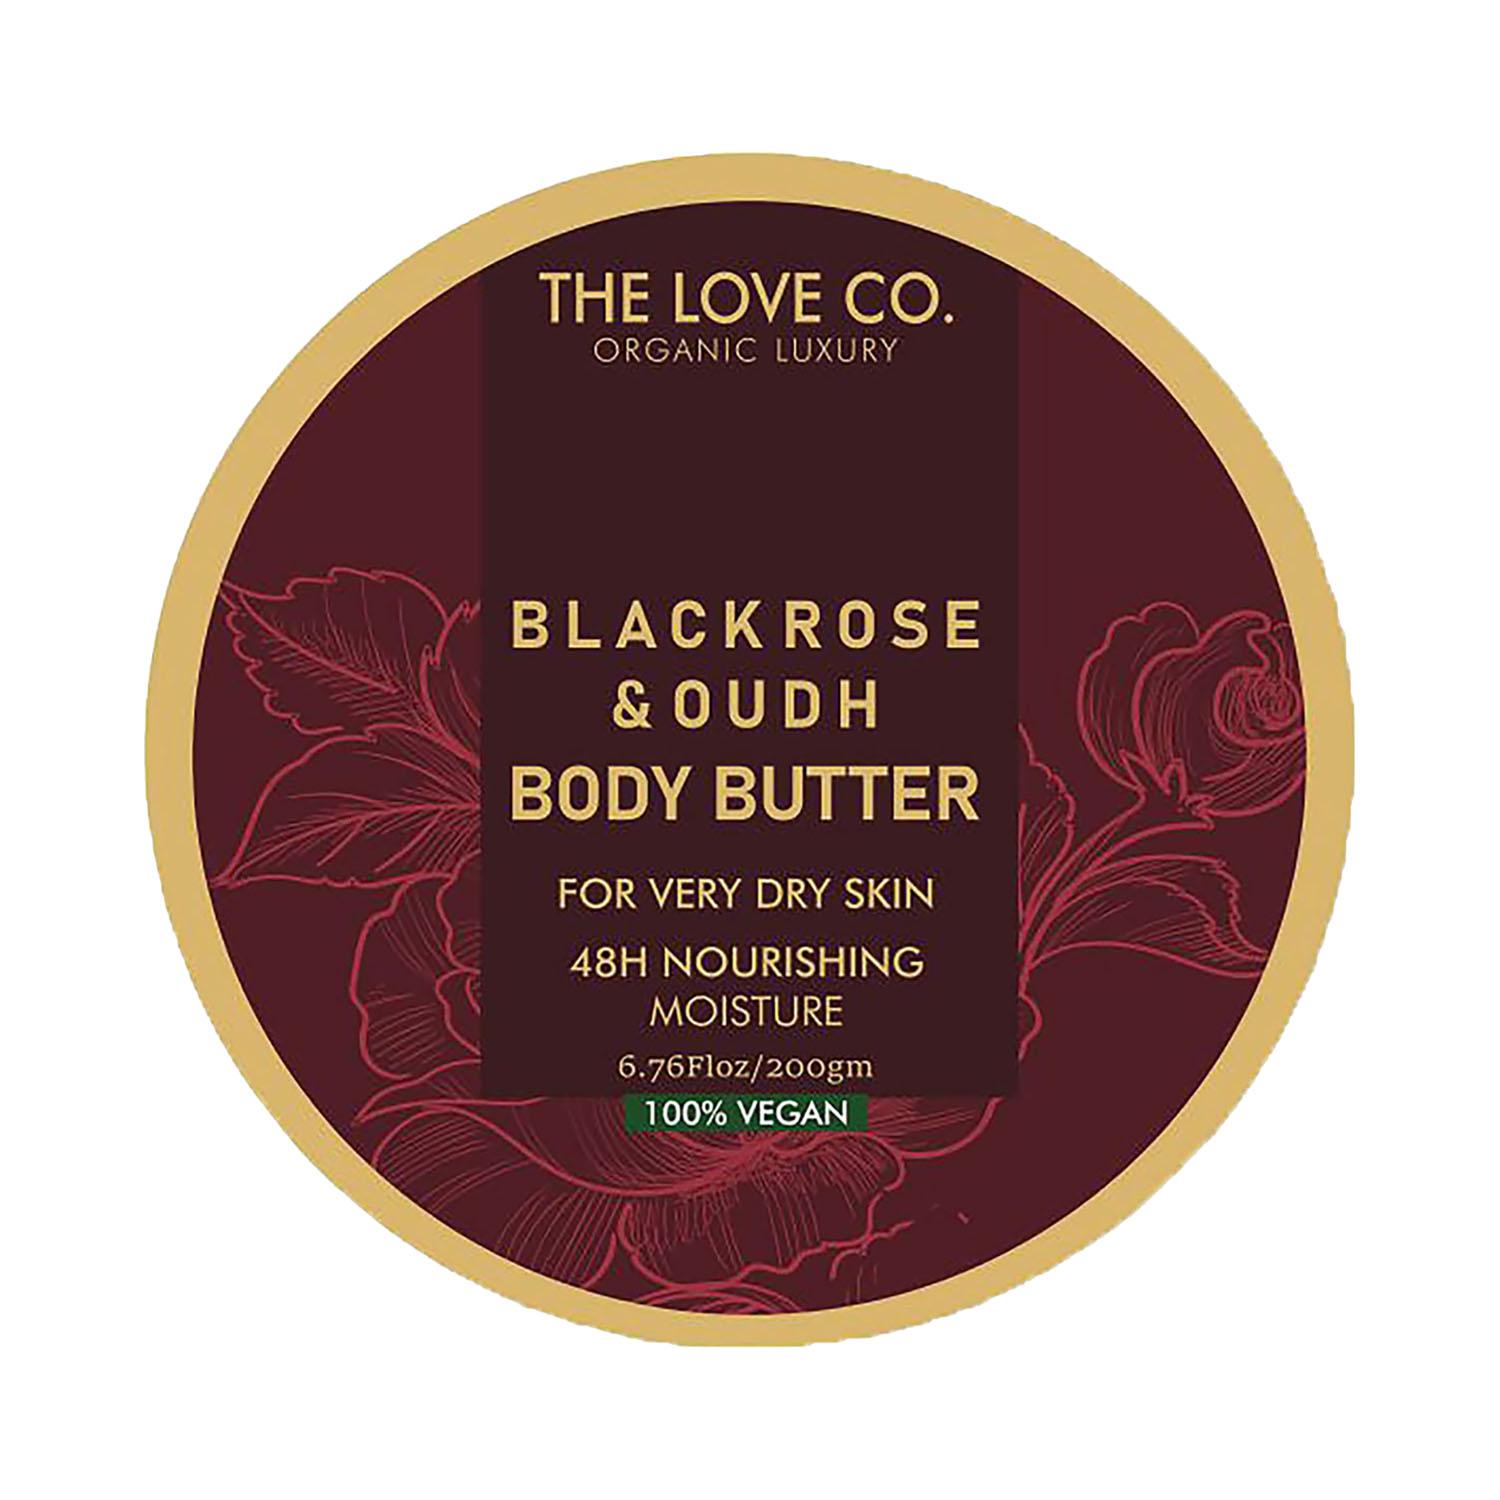 THE LOVE CO. | THE LOVE CO. The Love Co Black Rose Oud Body Butter Deep Moisturization With Shea Butter (200g)